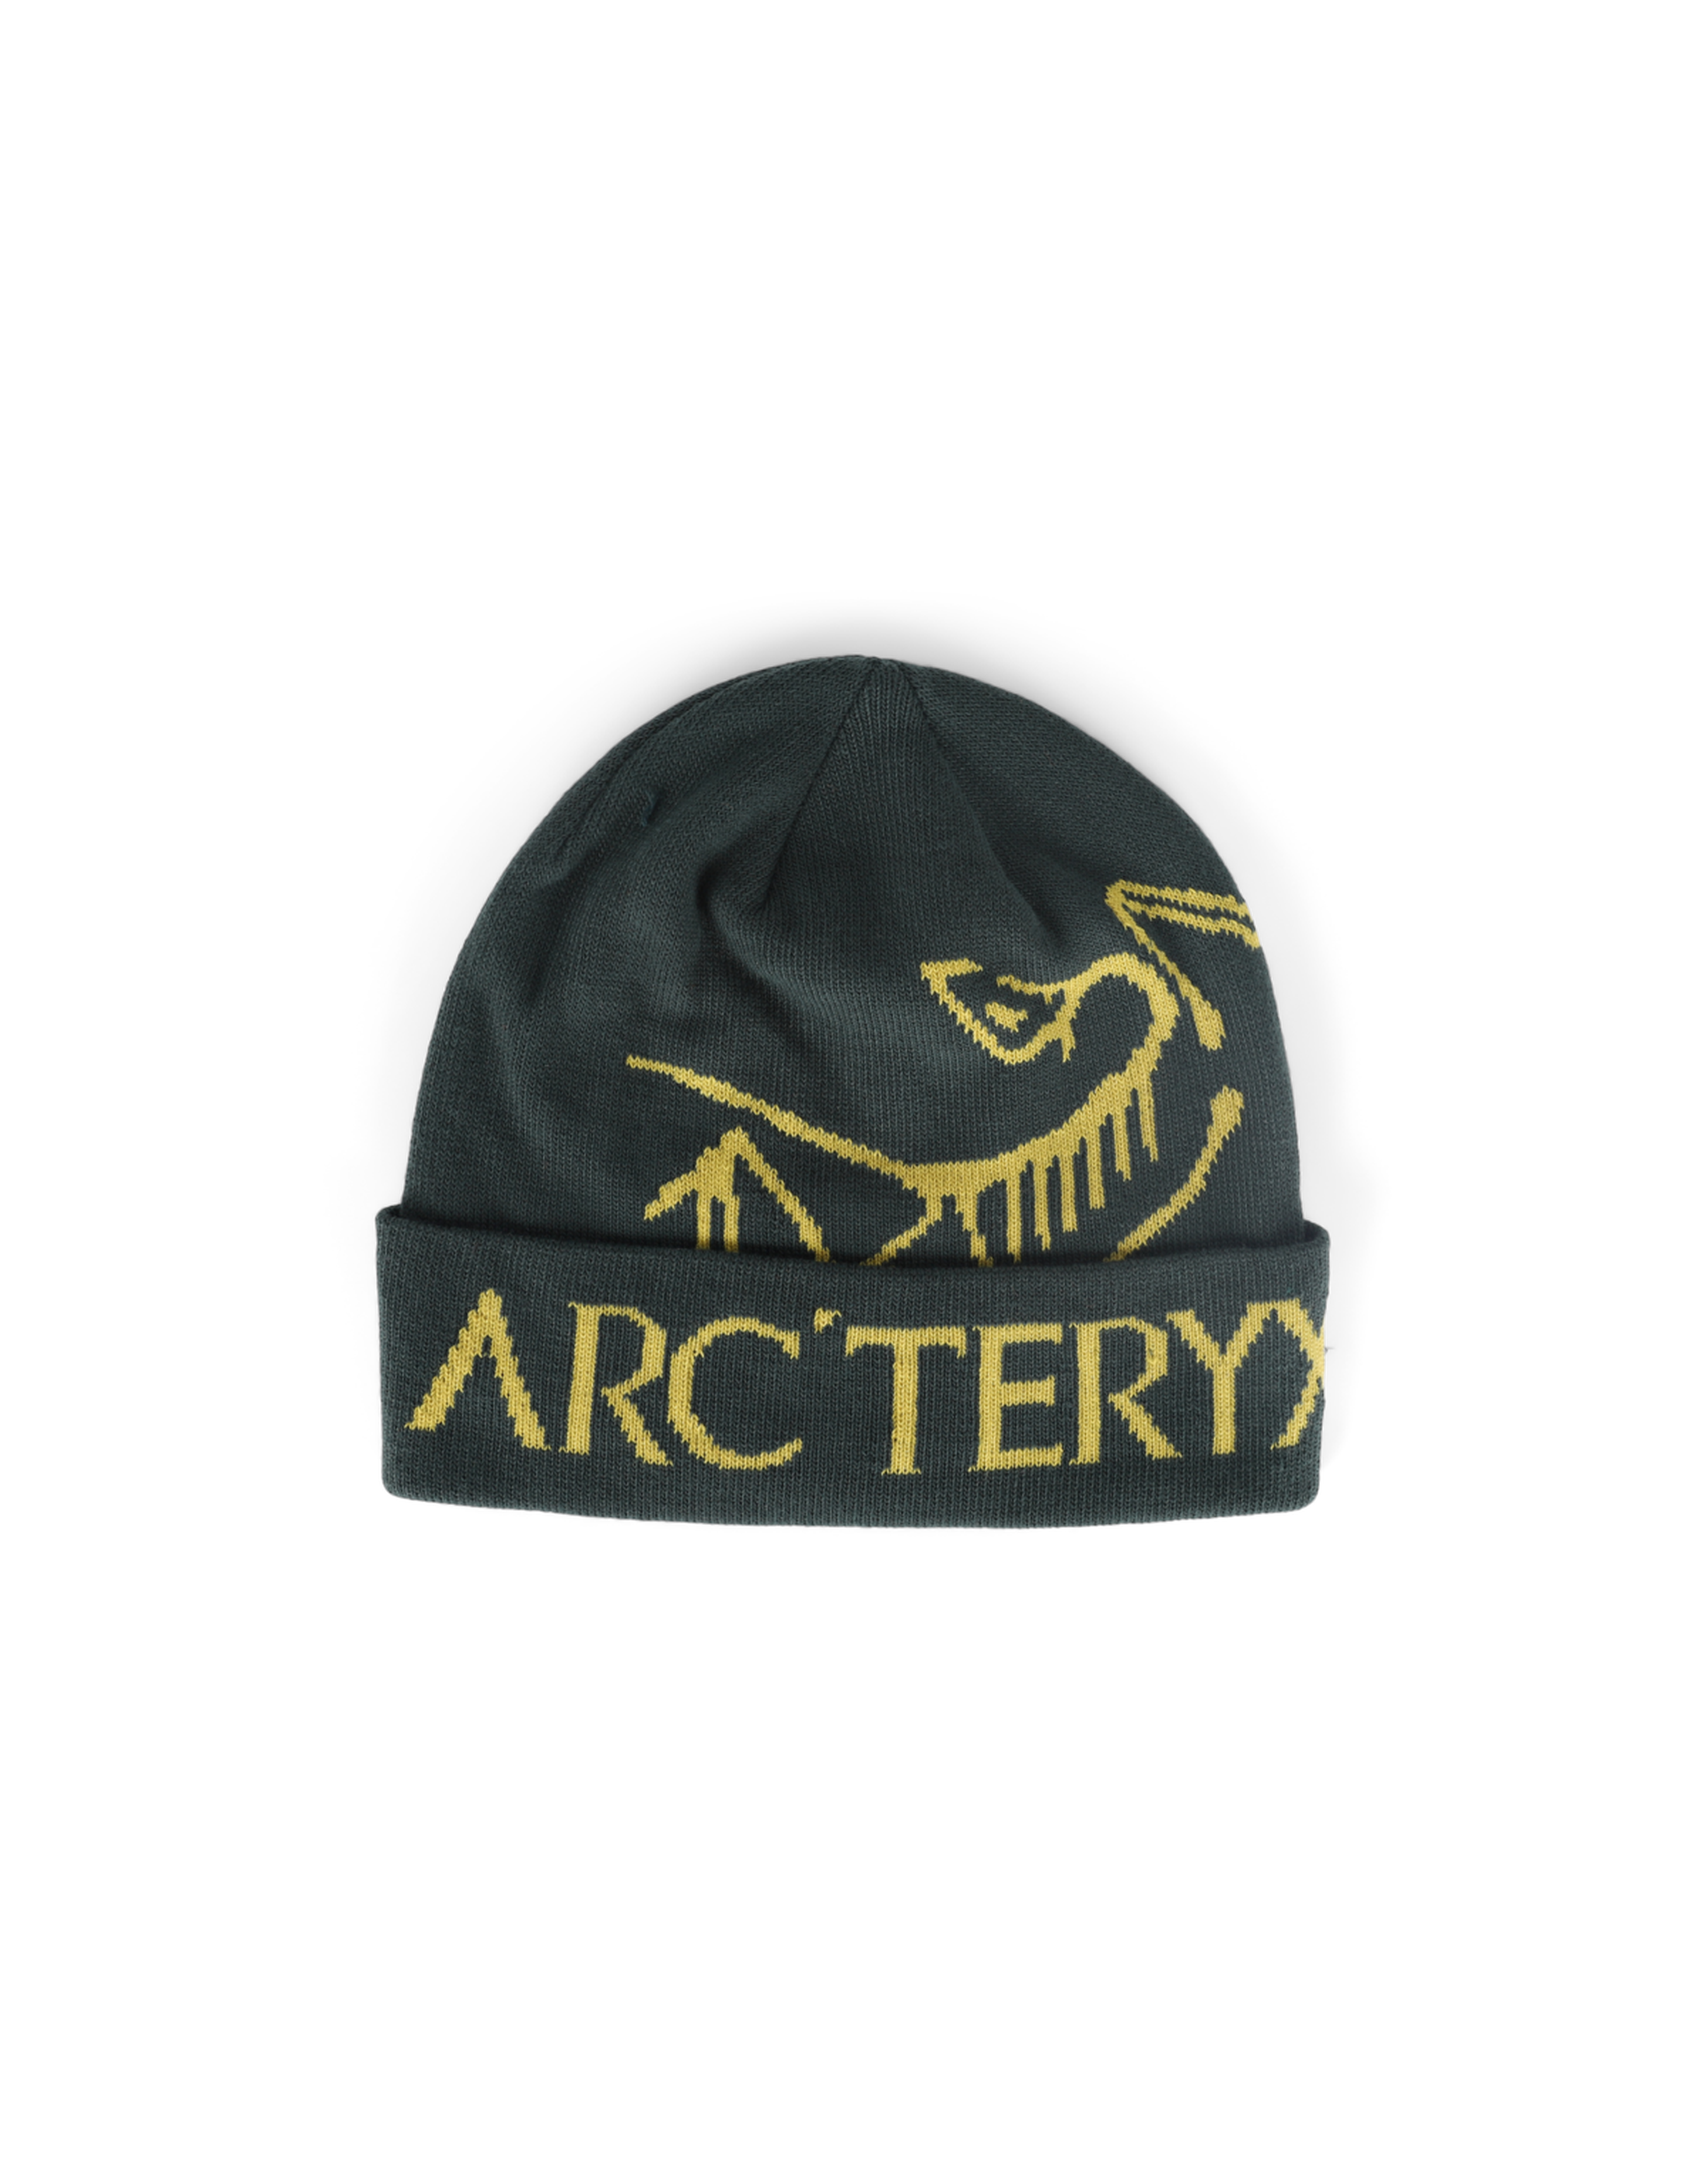 Buy Arcteryx | Fast Delivery – Rezetstore